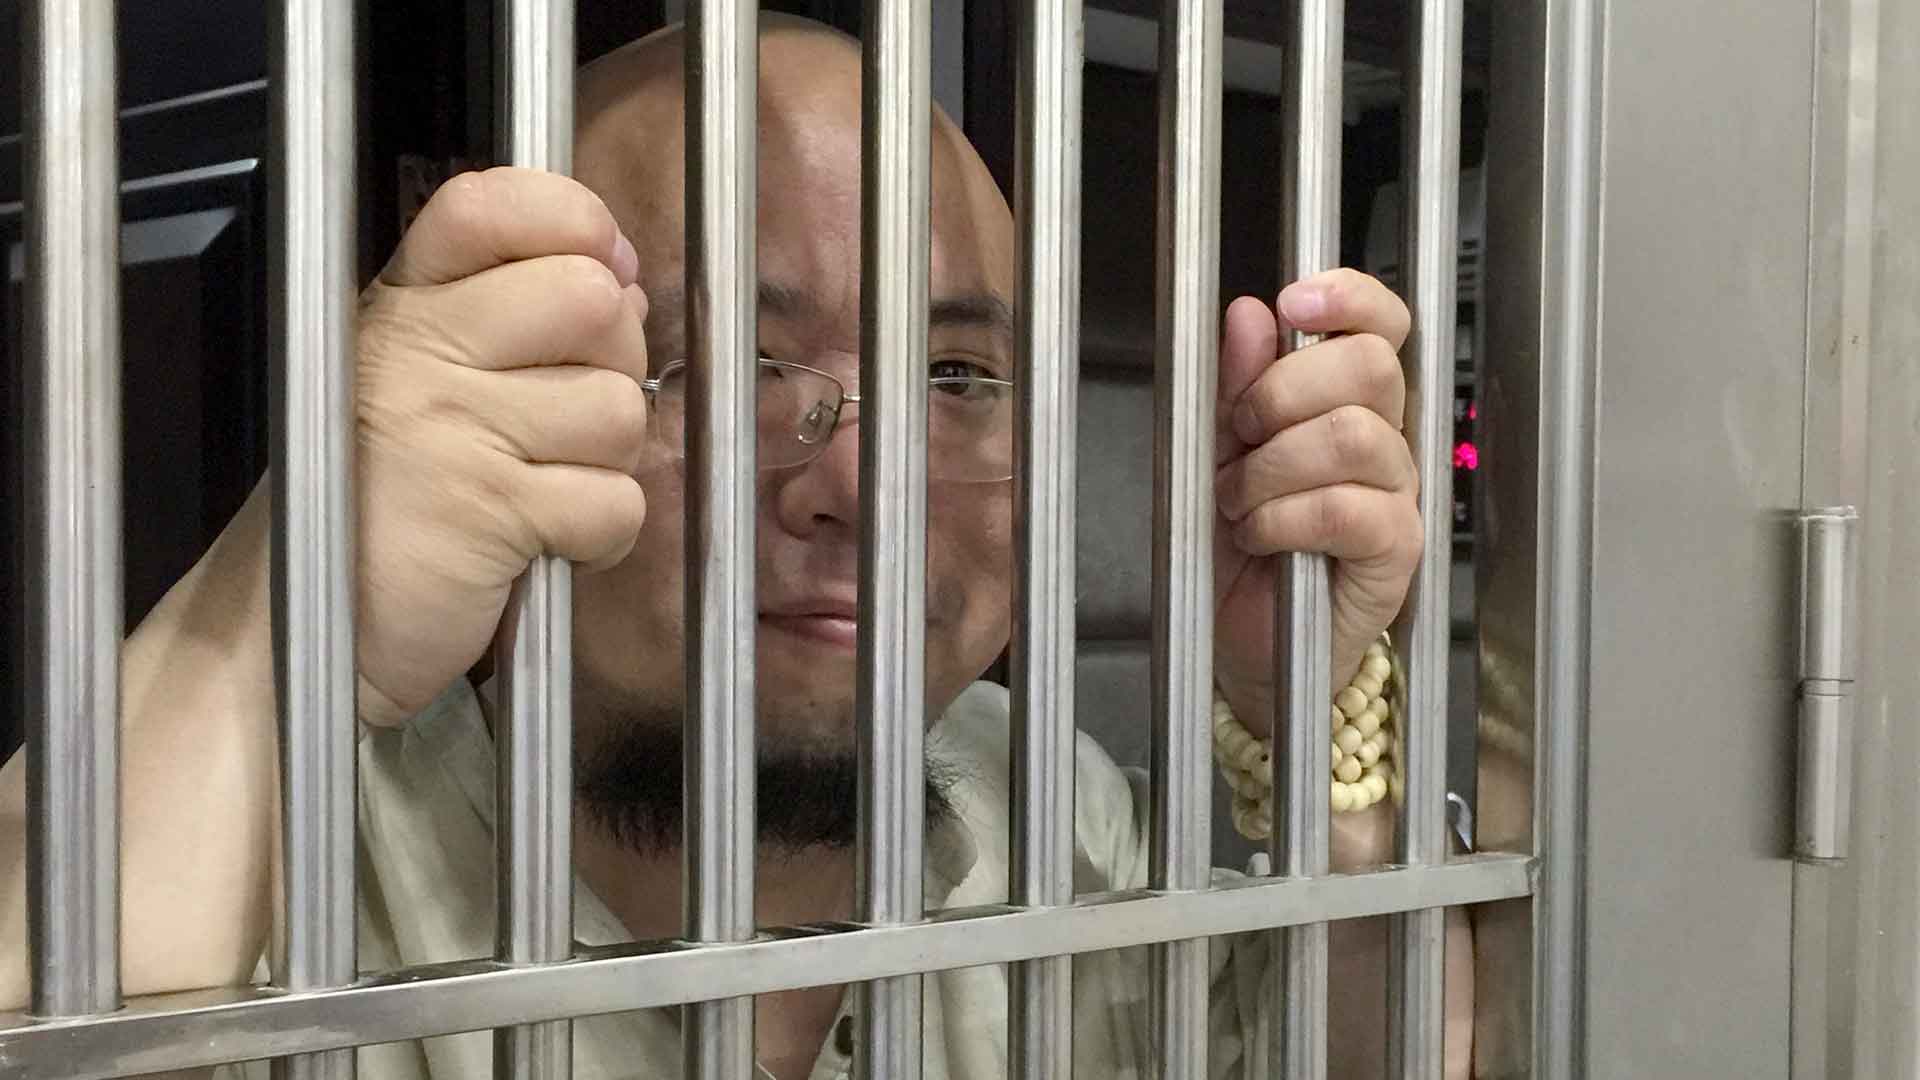 El popular activista y bloguero chino Wu Gan es condenado a ocho años de prisión